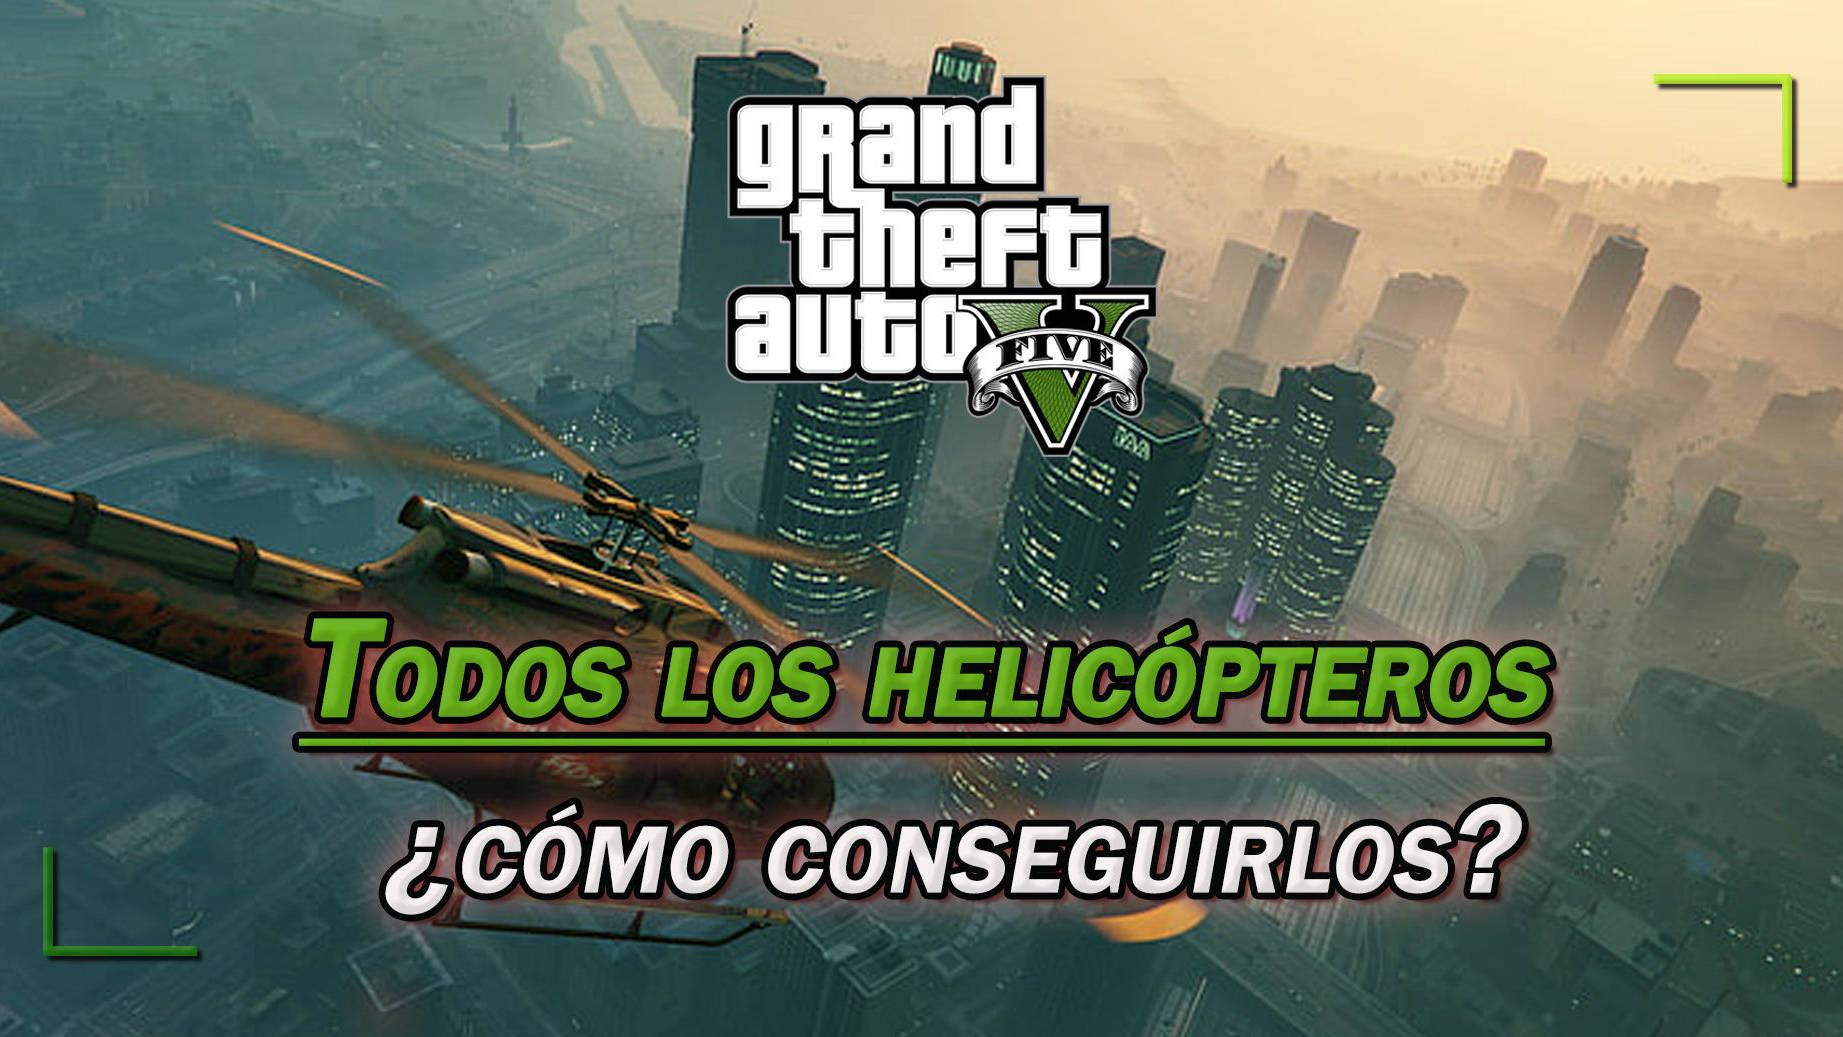 NEW  GOD MODE EN AVIONES  CUALQUIER AVION O HELICOPTERO  GTA 5 ONLINE   TODAS LAS PLATAFORMAS   YouTube